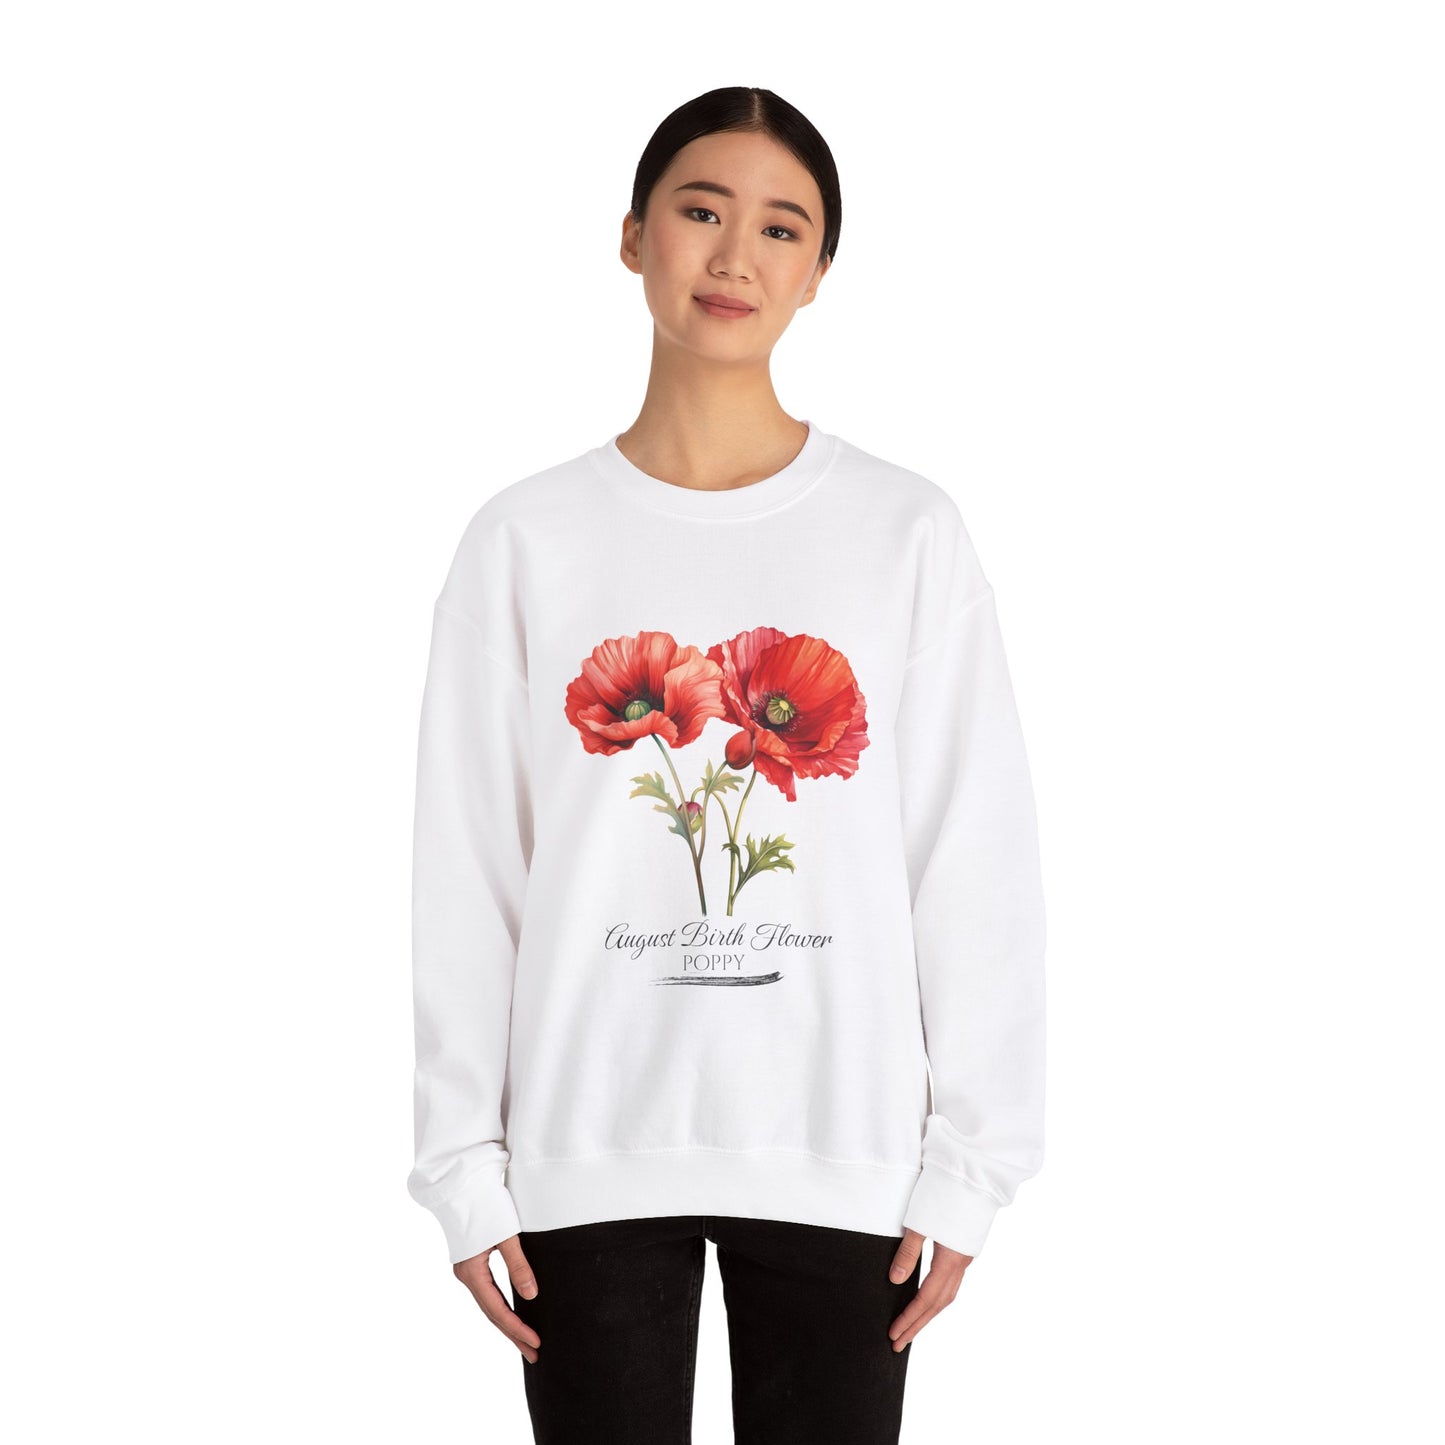 August Birth Flower (Poppy) - Unisex Heavy Blend™ Crewneck Sweatshirt